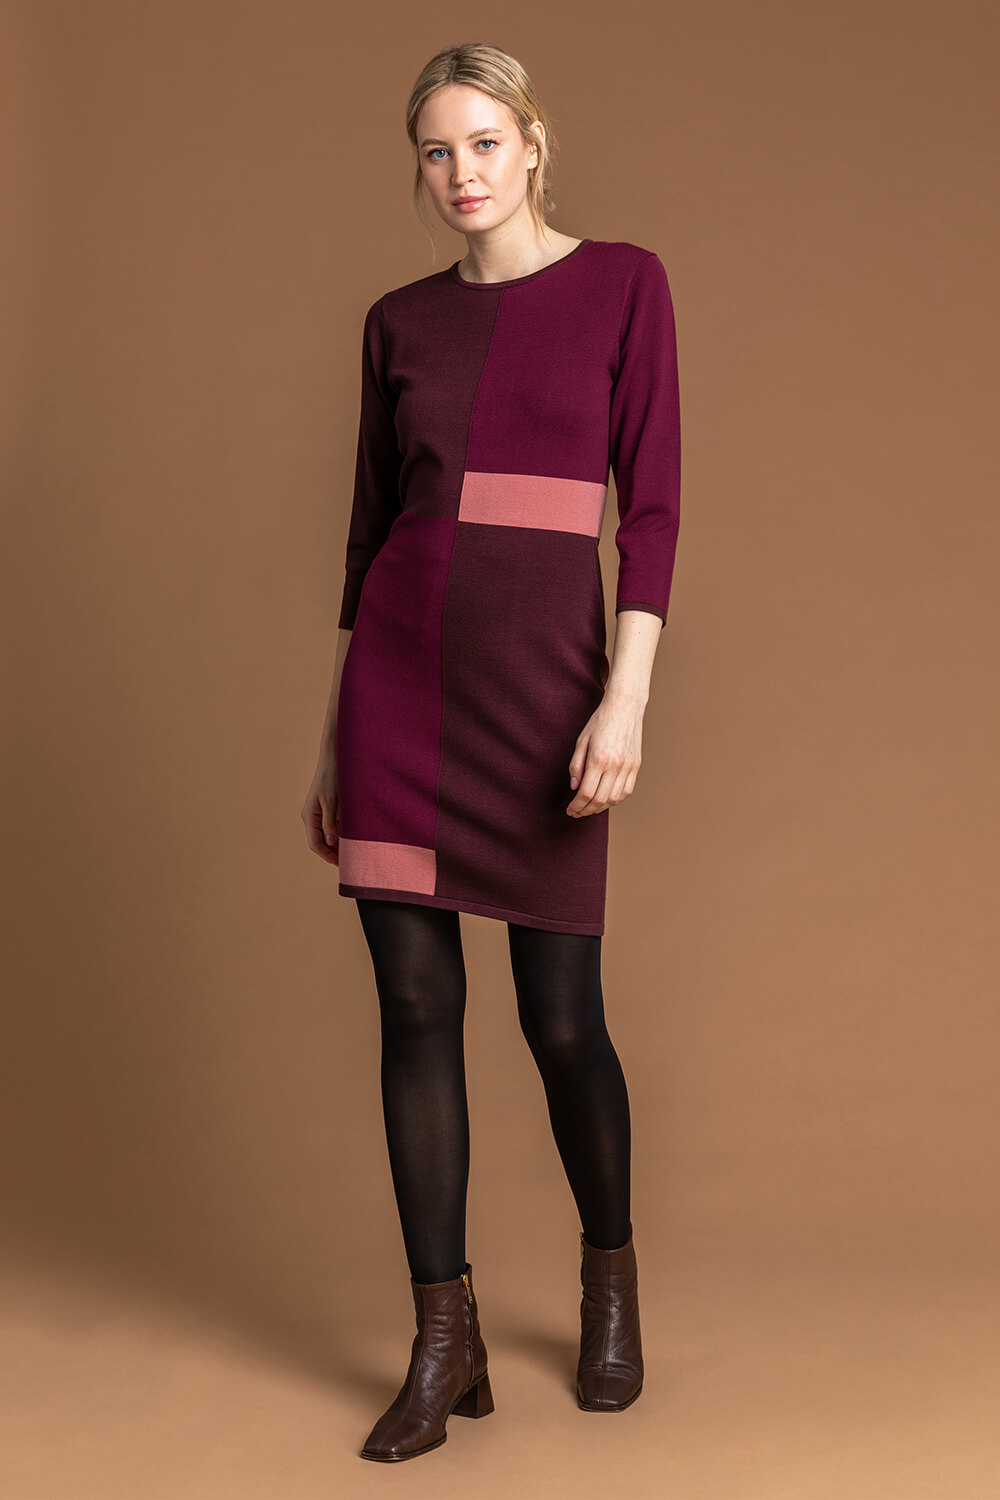 Roman Originals Women Colour Block Knitted Dress 